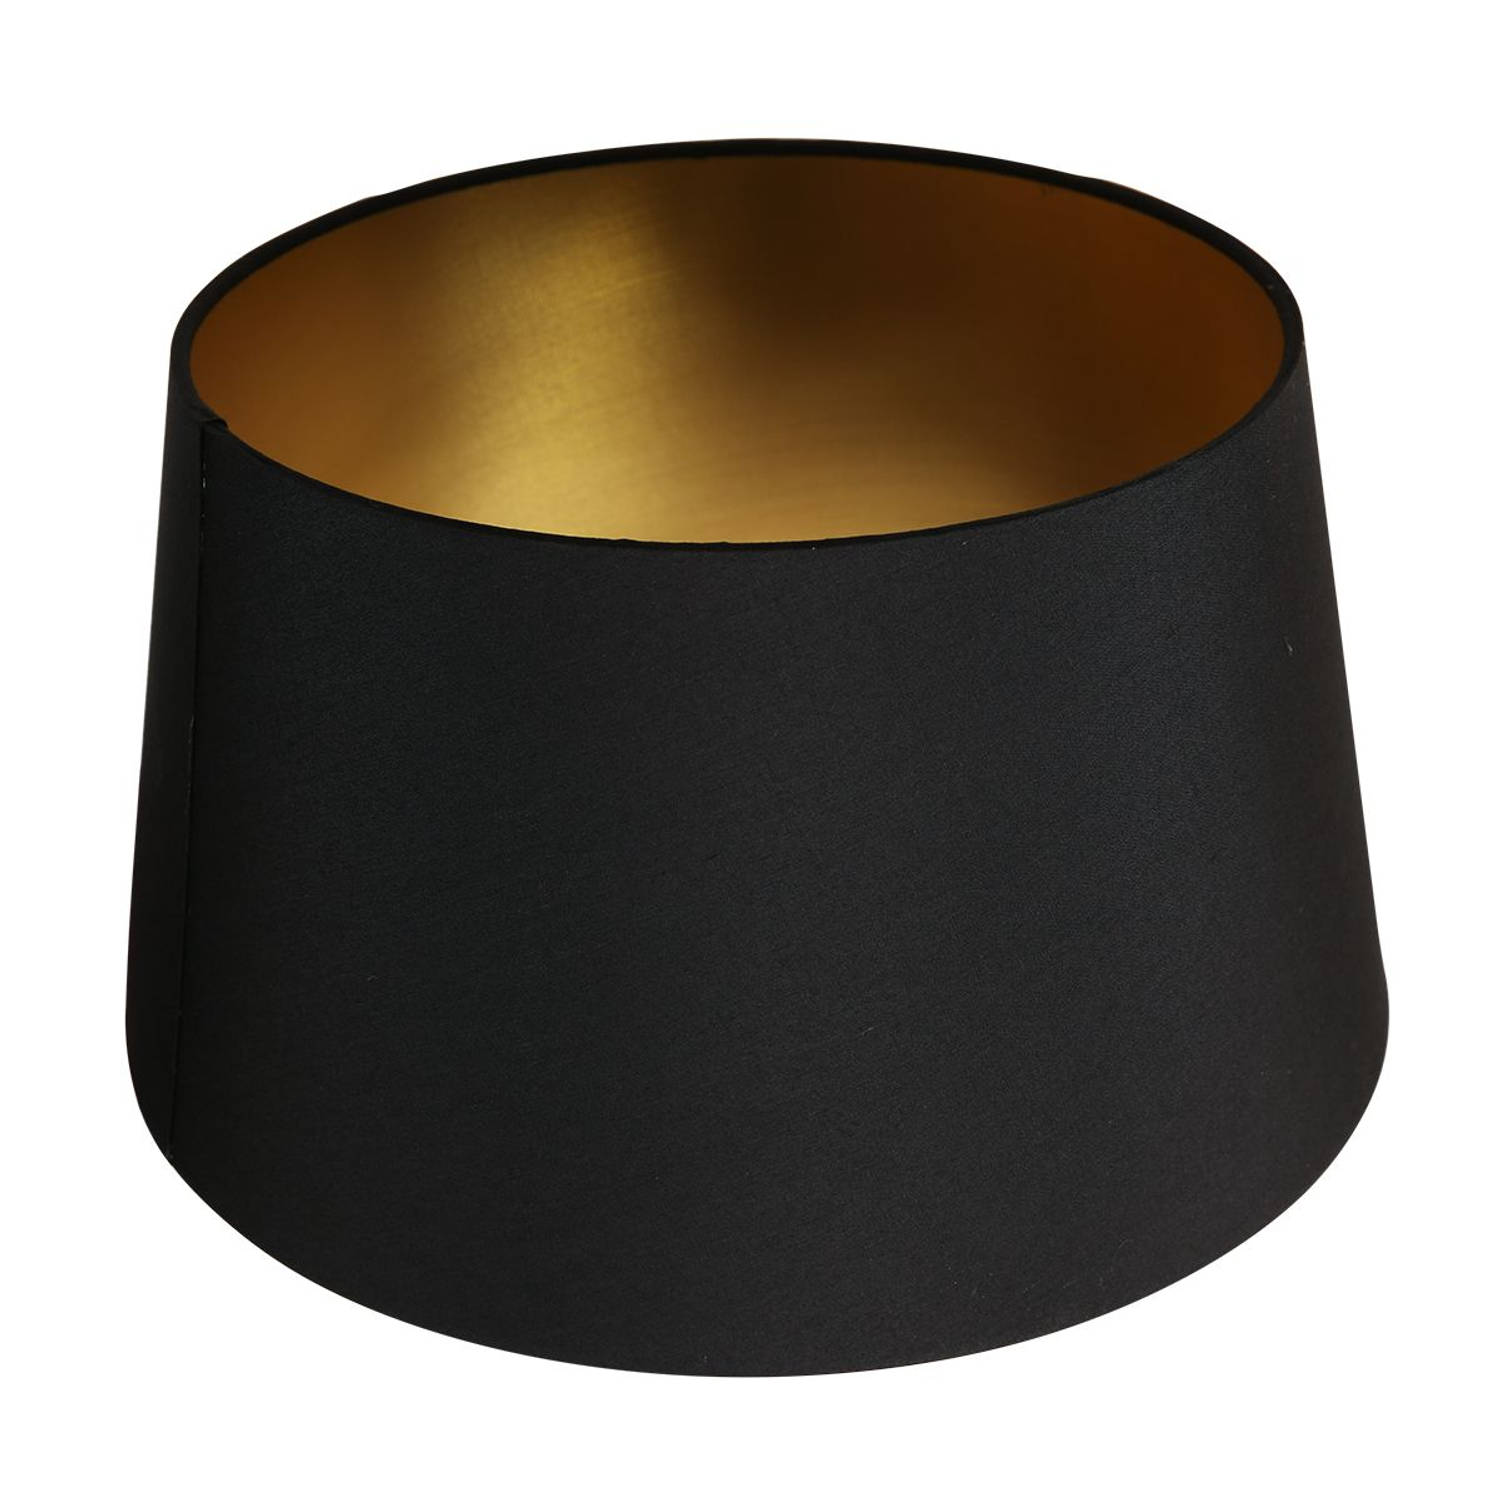 Mexlite Lampenkappen lampenkappen - ø 30 cm - E27 (grote fitting) - zwart